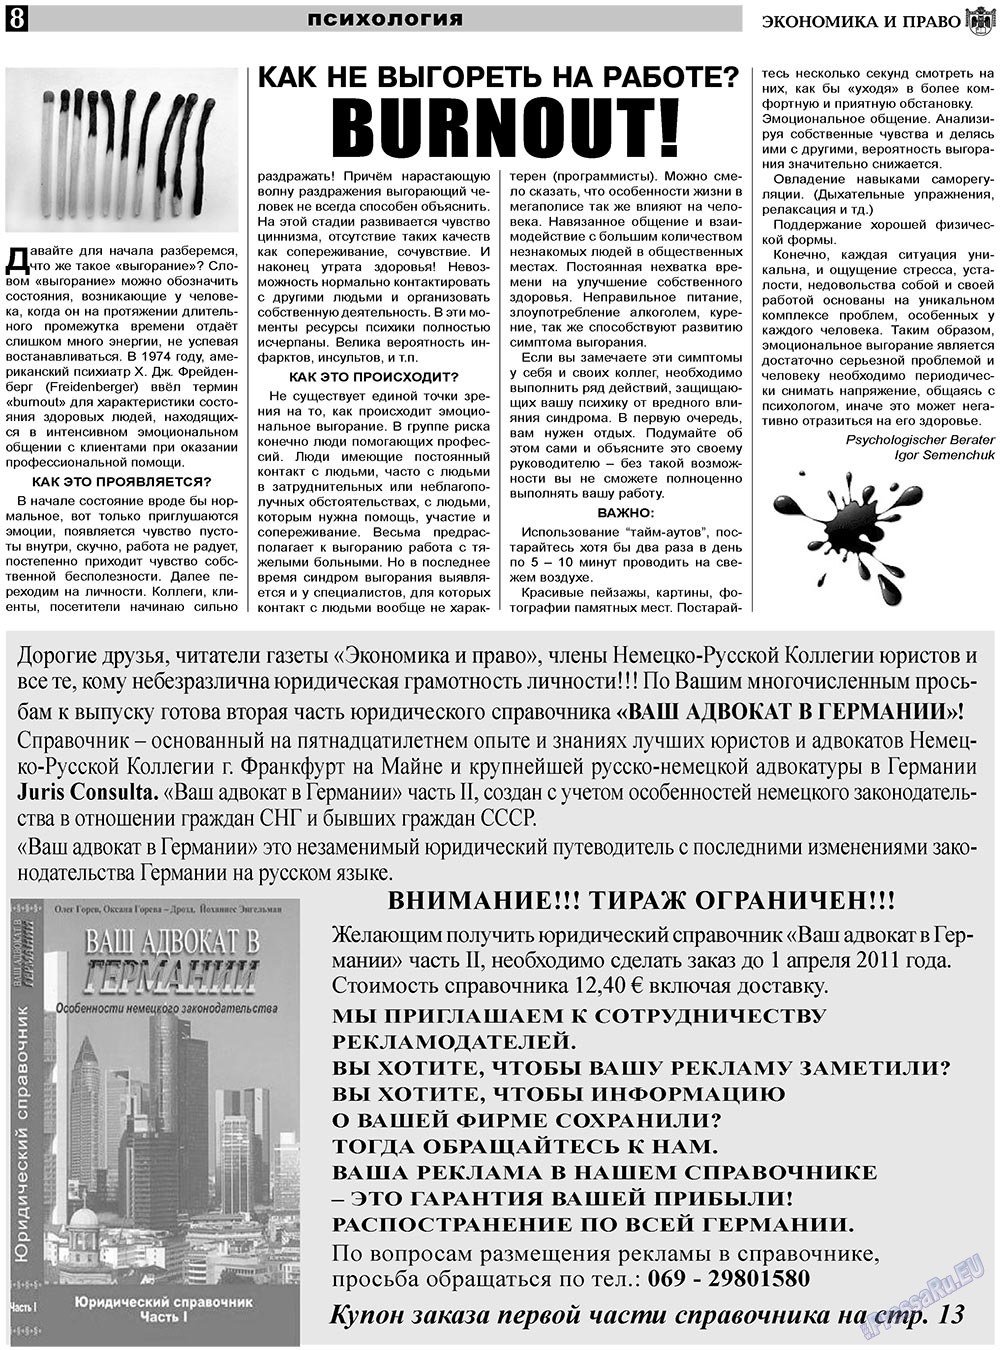 Экономика и право, газета. 2011 №3 стр.8